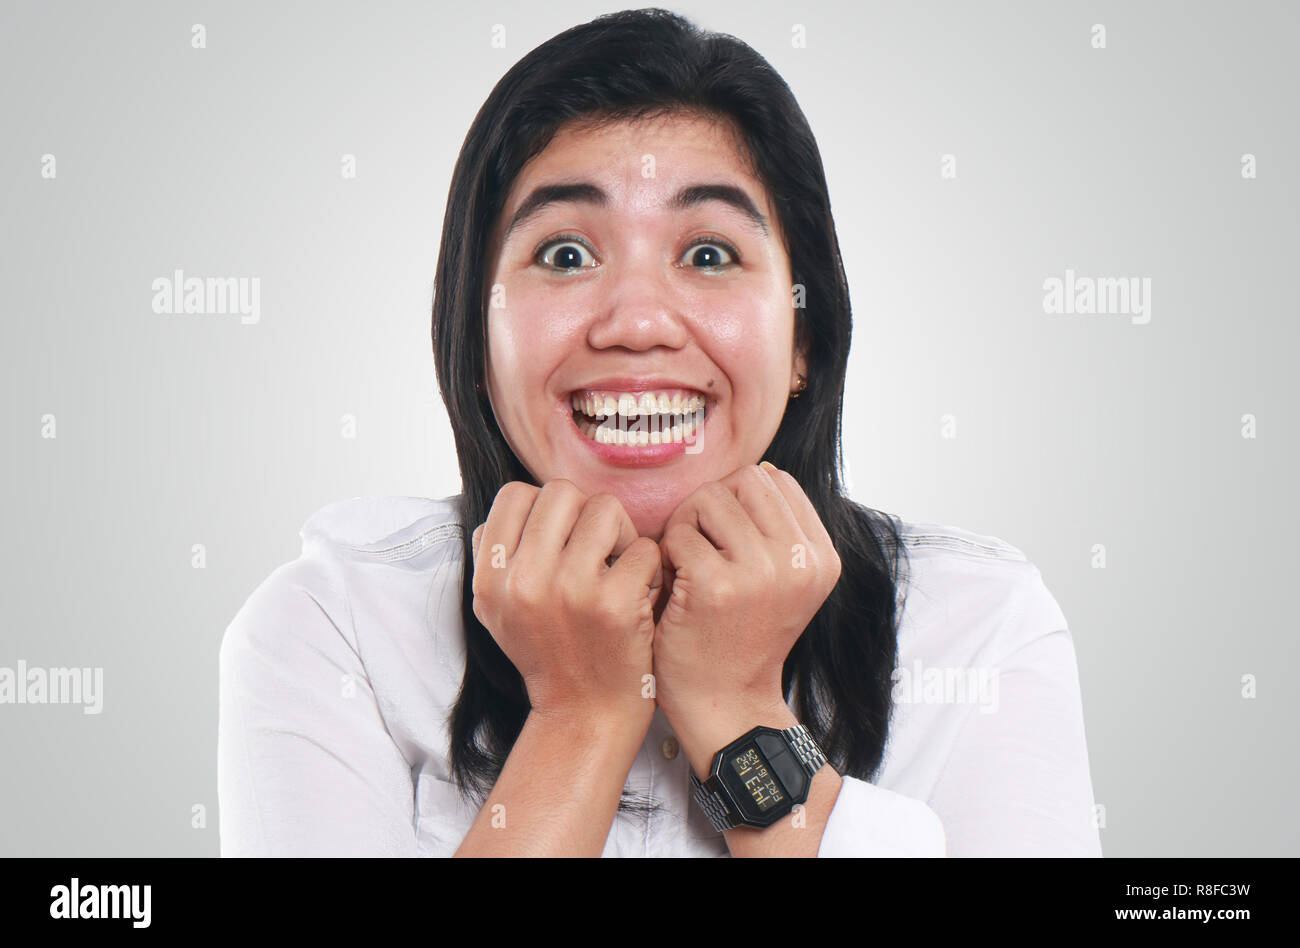 Foto immagine ritratto di una giovane bella donna asiatica sembrava molto eccitato, con grandi occhi e un grande sorriso sul suo viso Foto Stock